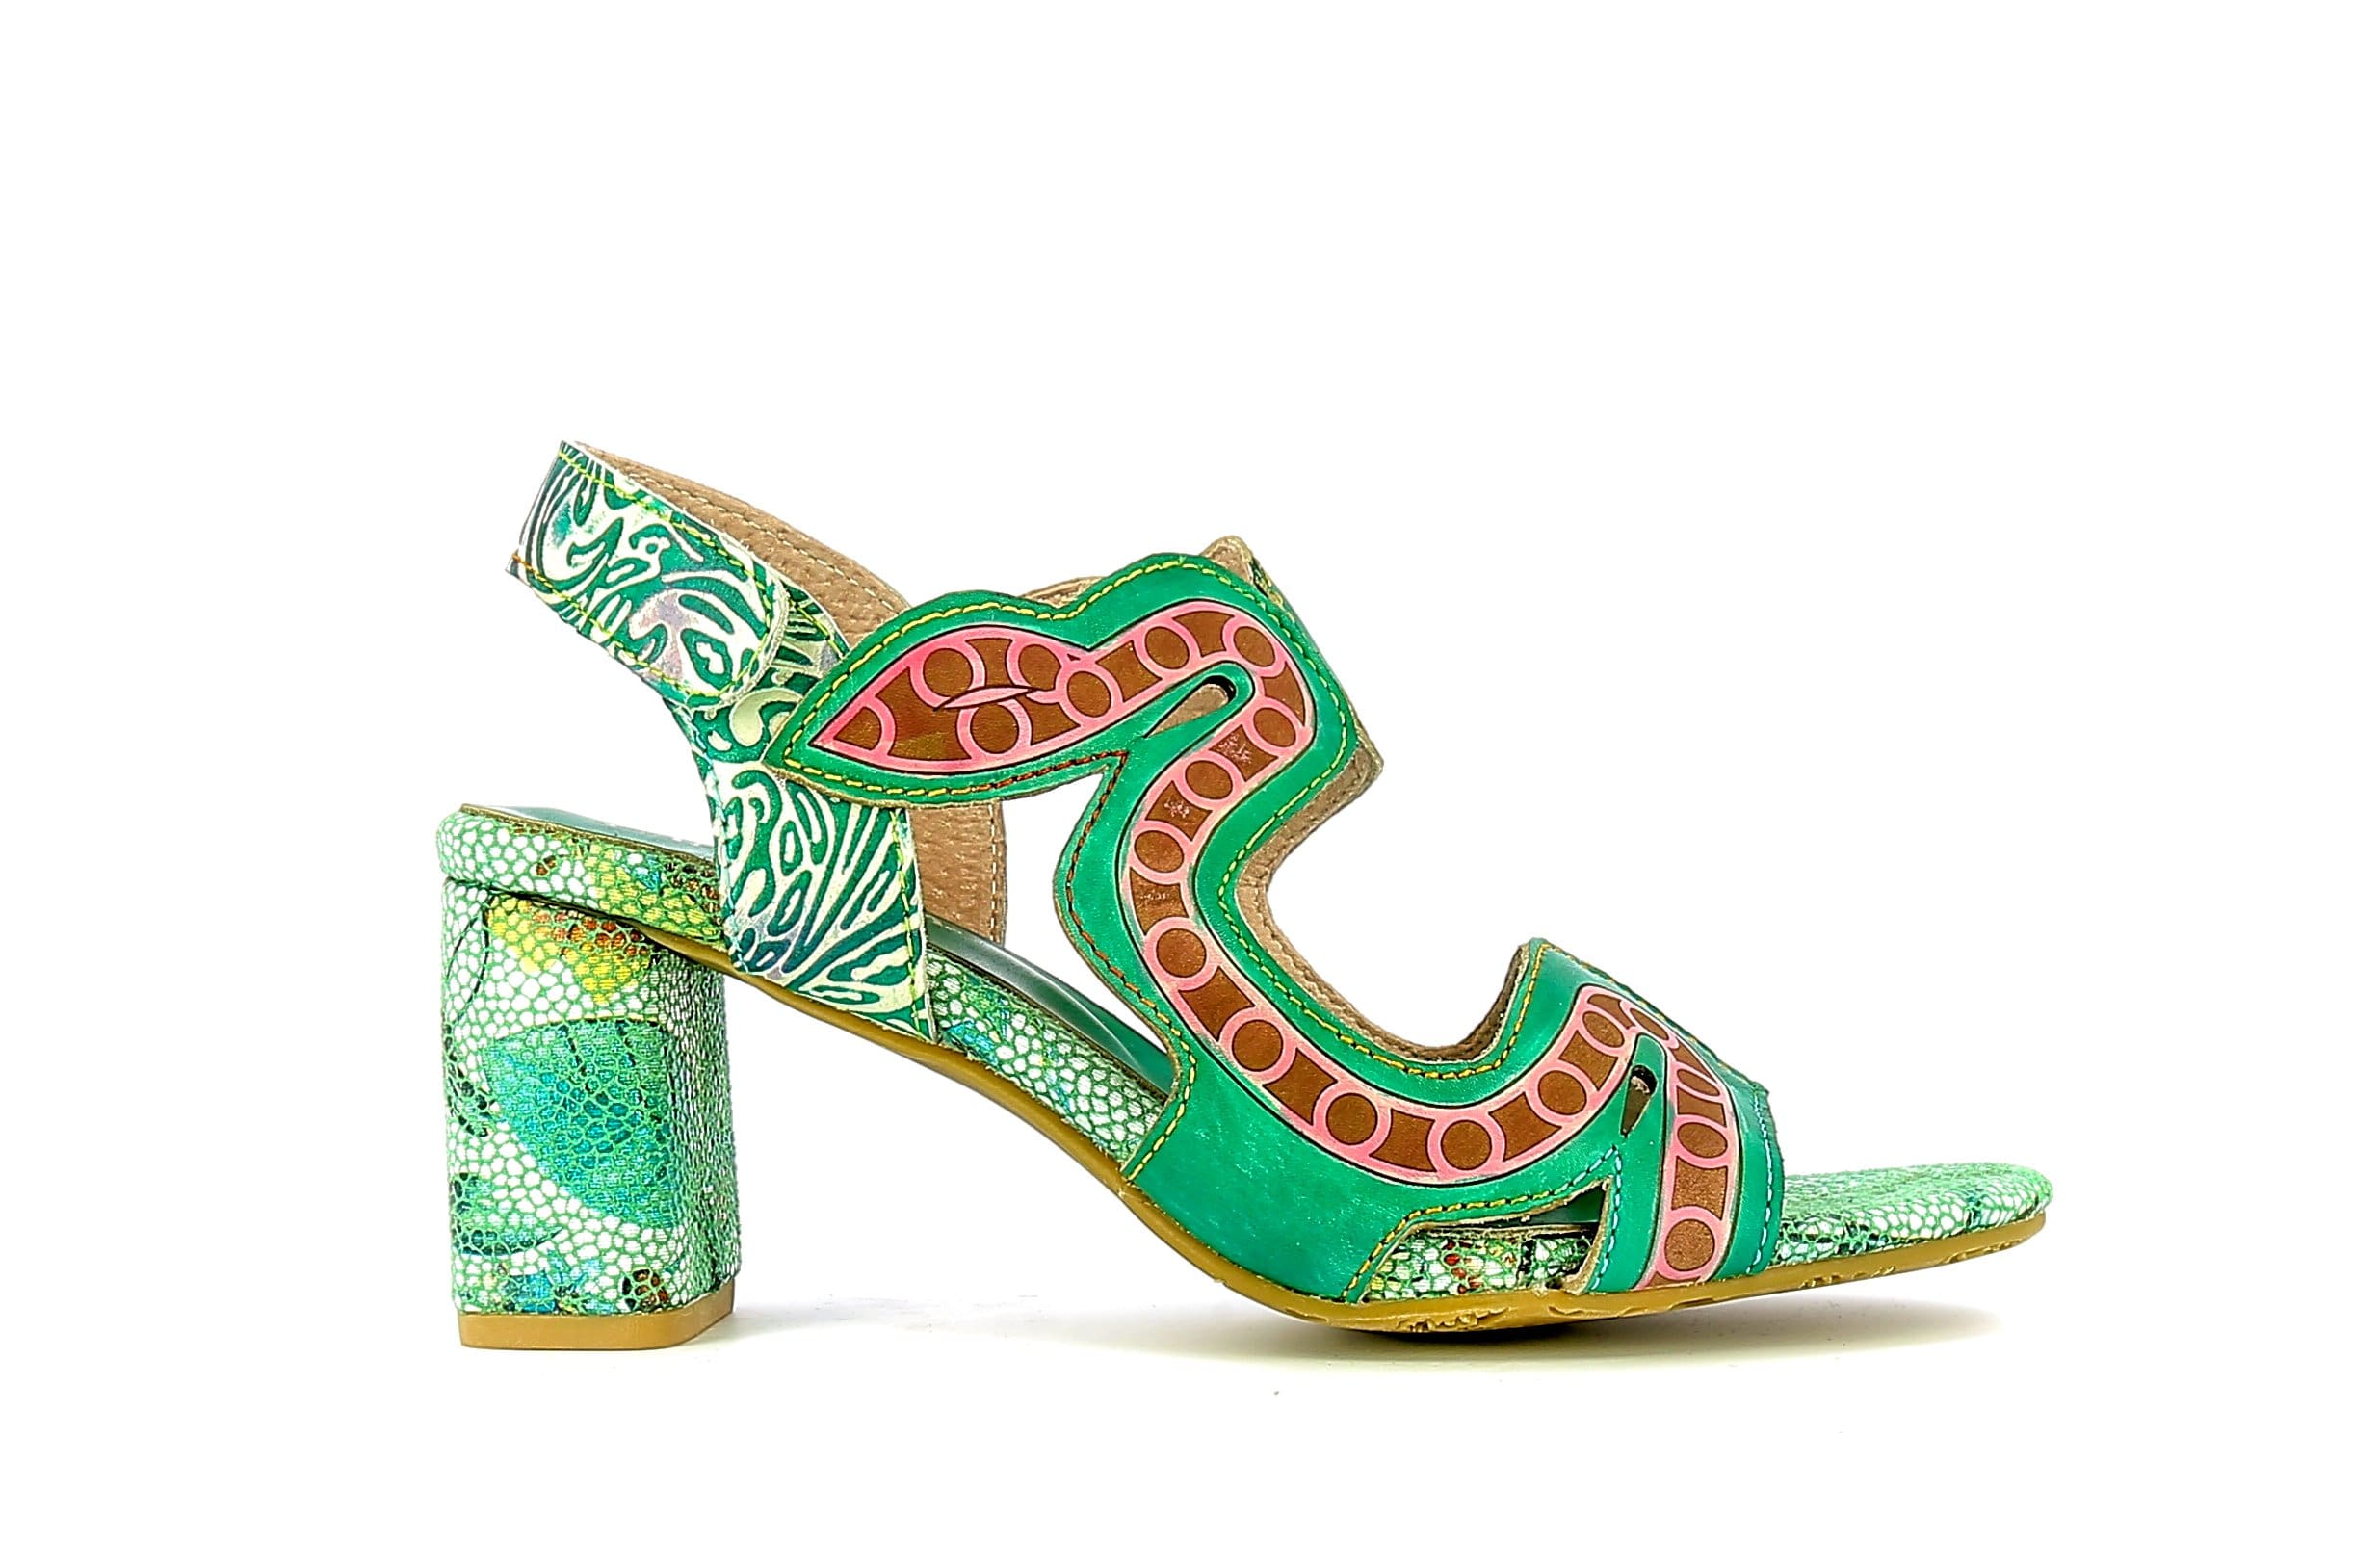 Schuhe HECO 01 - 35 / GREEN - Sandale